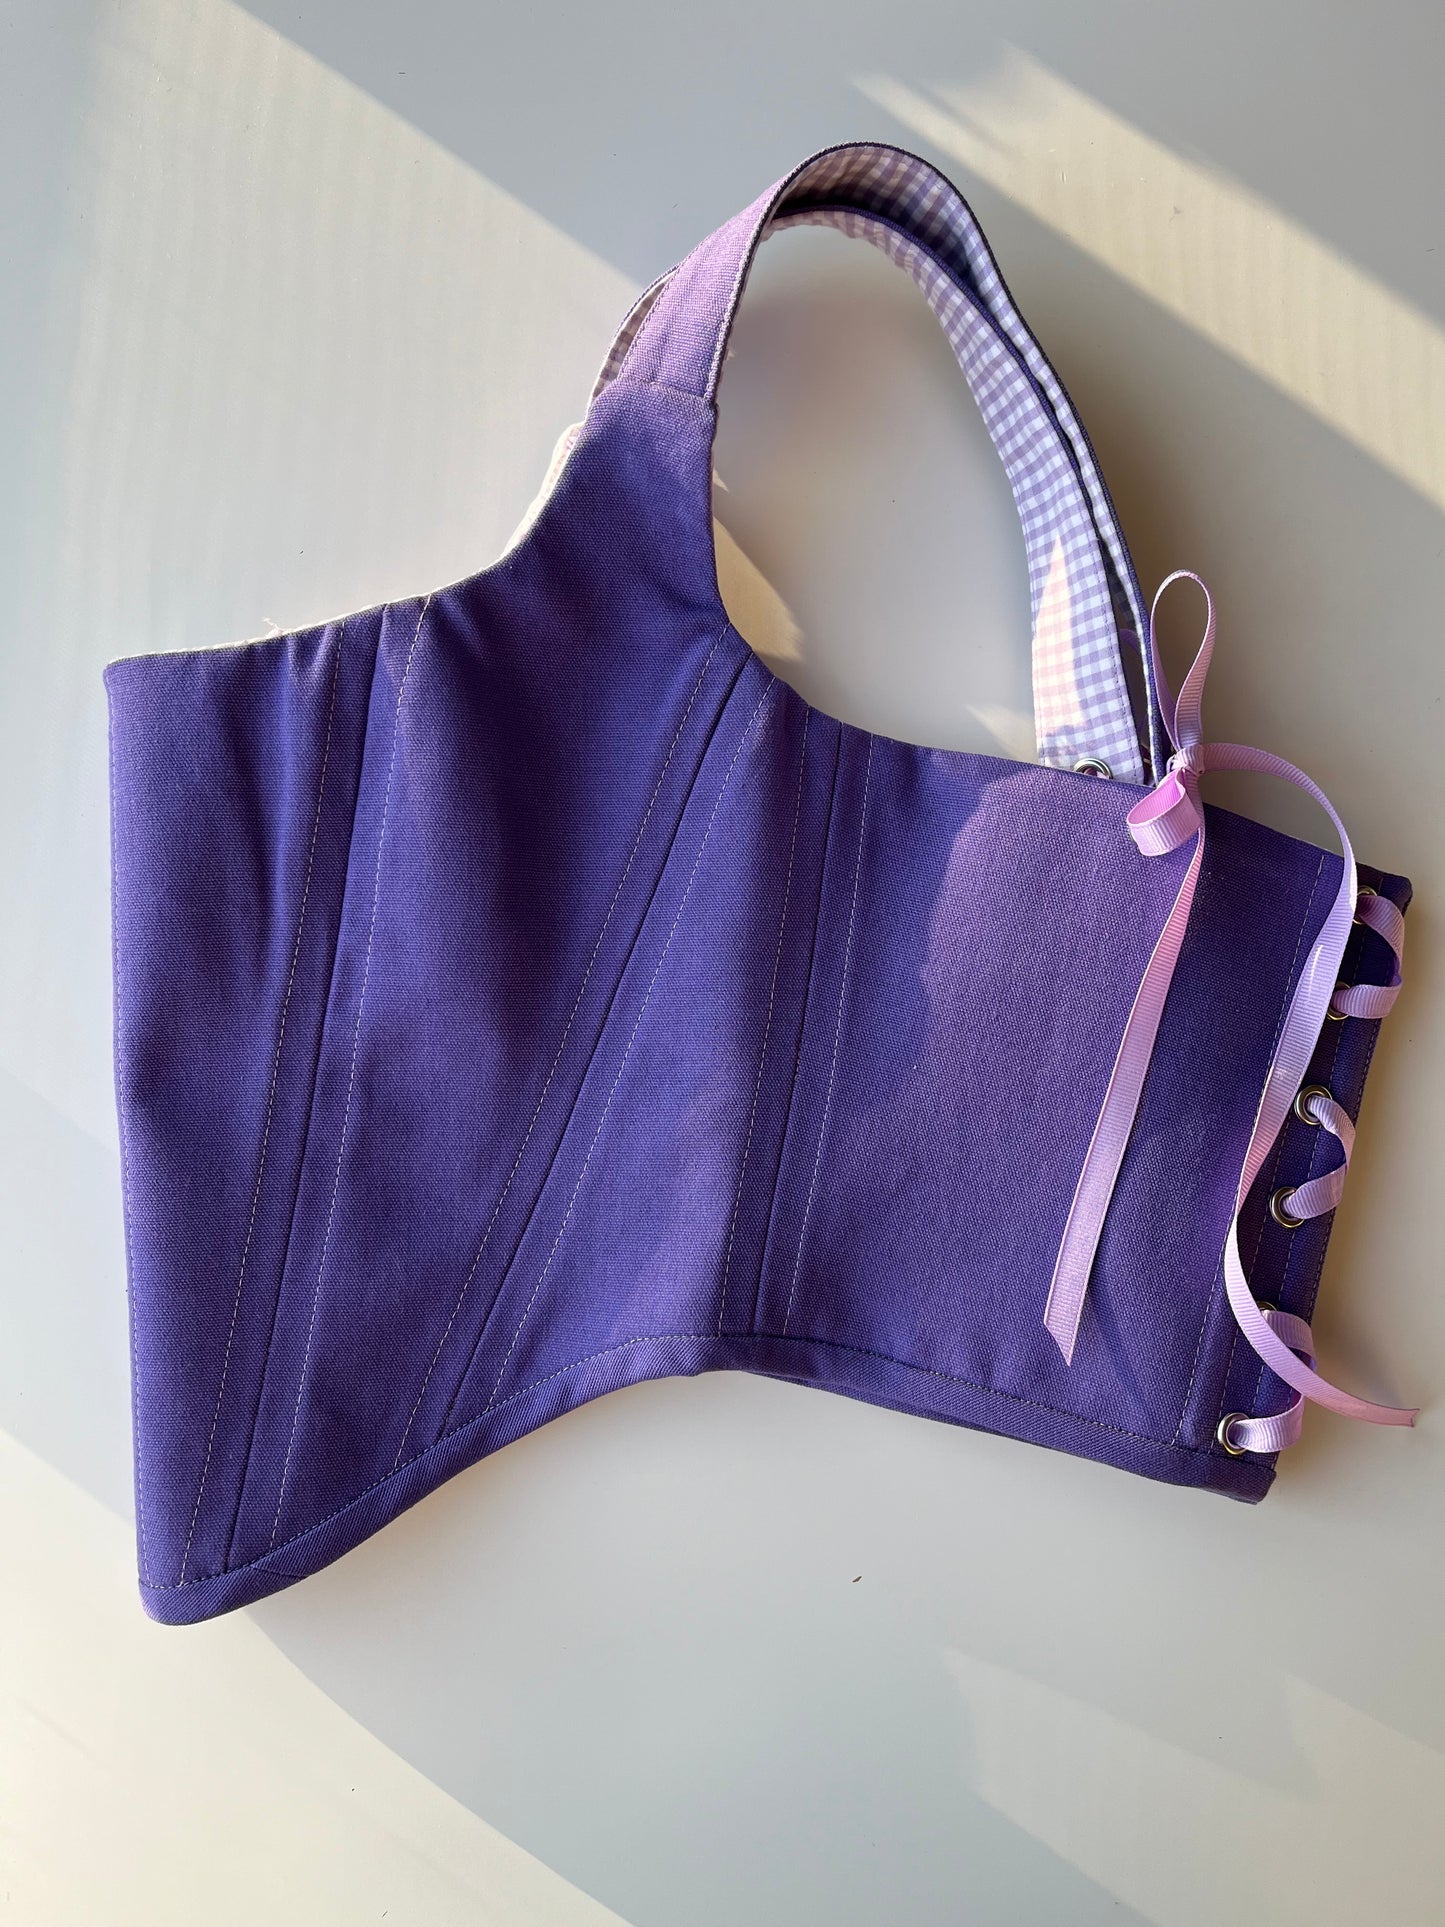 Reversible purple/ lavender gingham corset size S/M